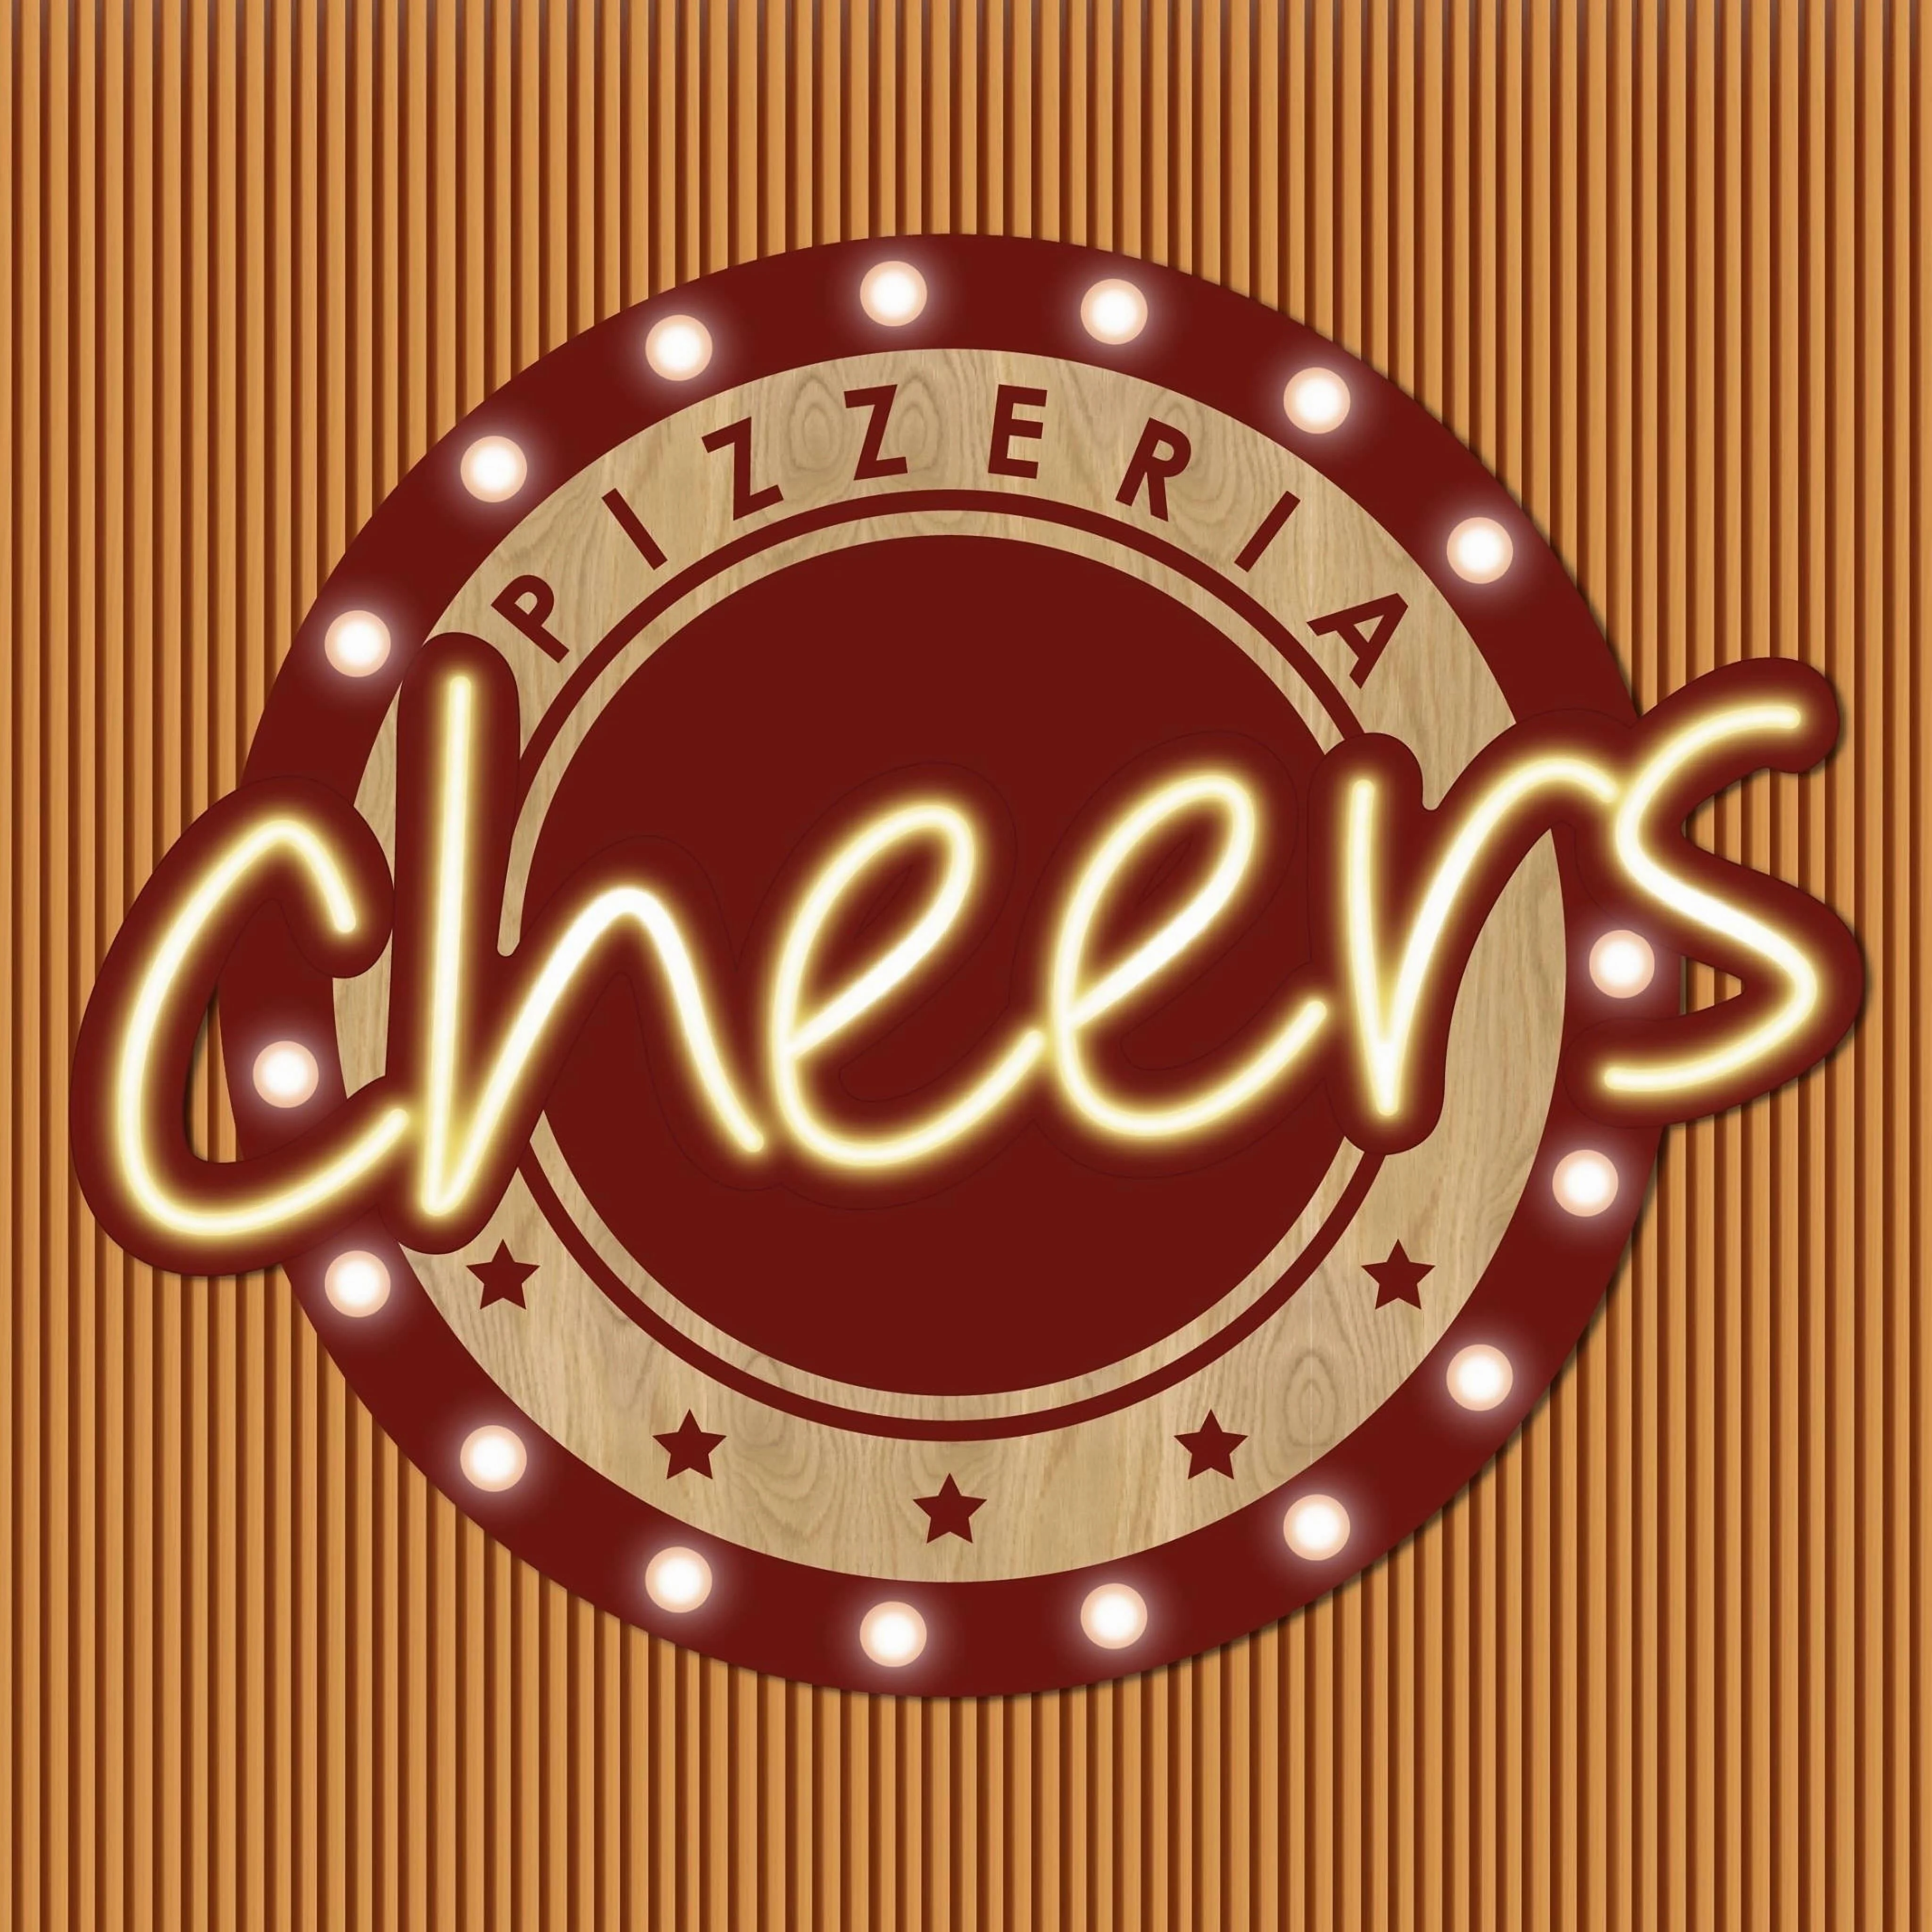 Cheers Pizzeria Pereira-6396